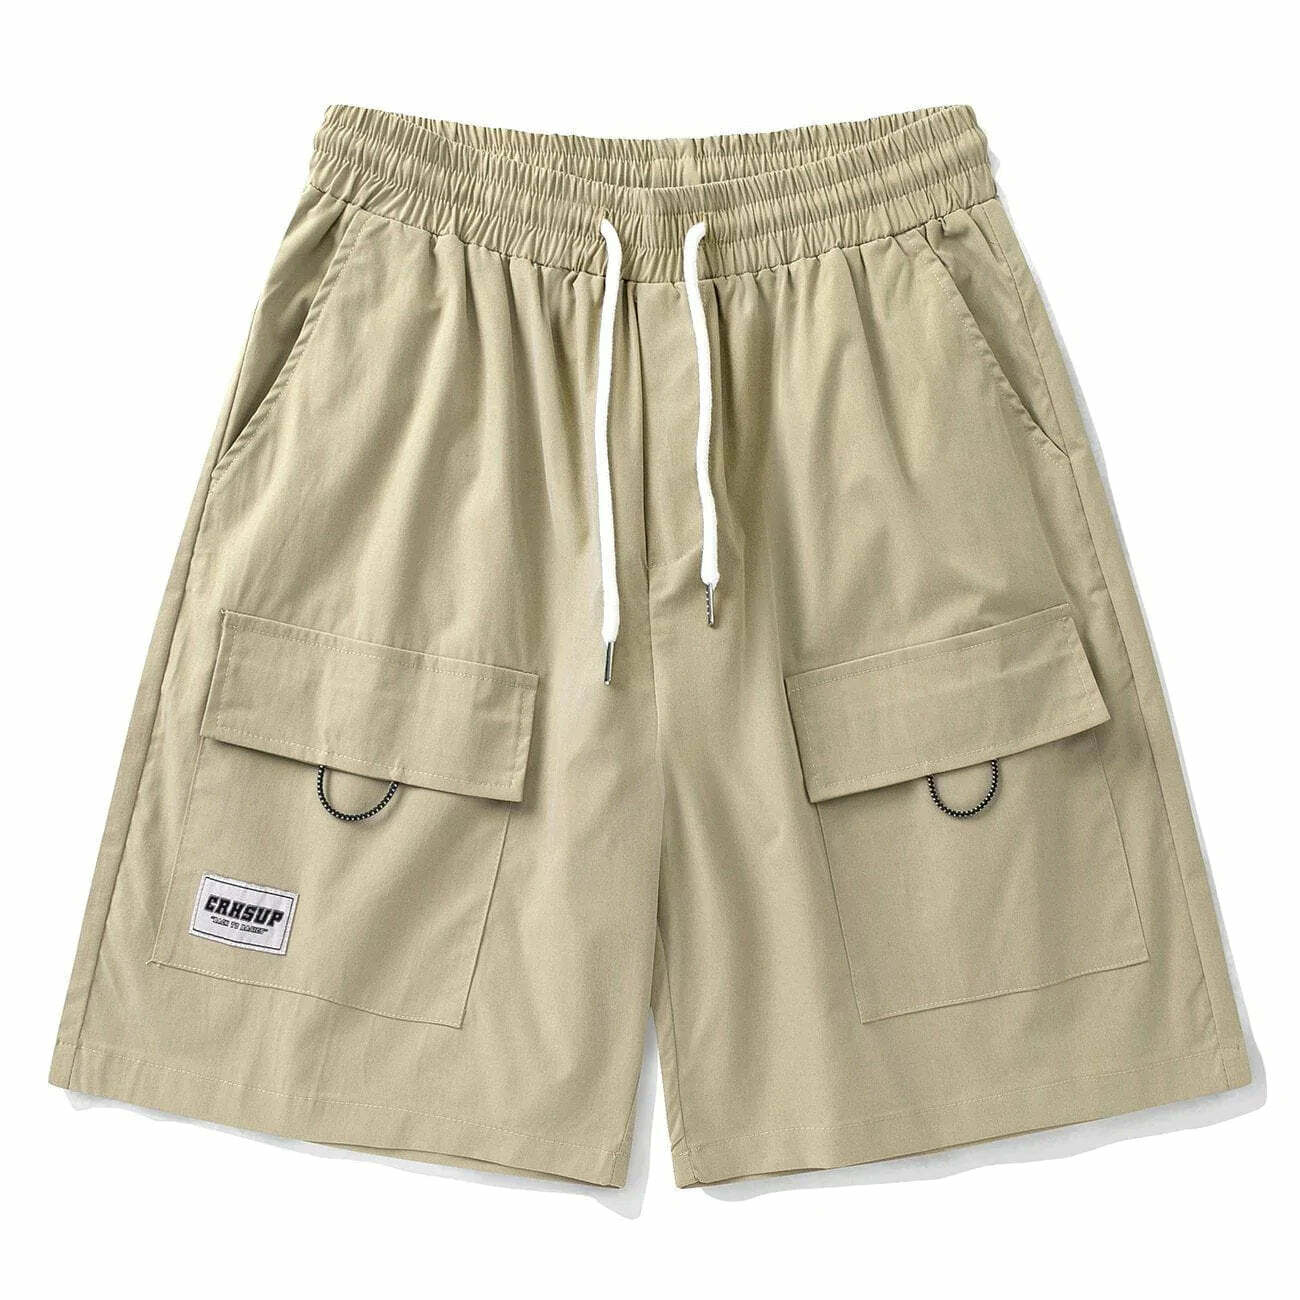 y2k drawstring pocket shorts urban & edgy streetwear 3595